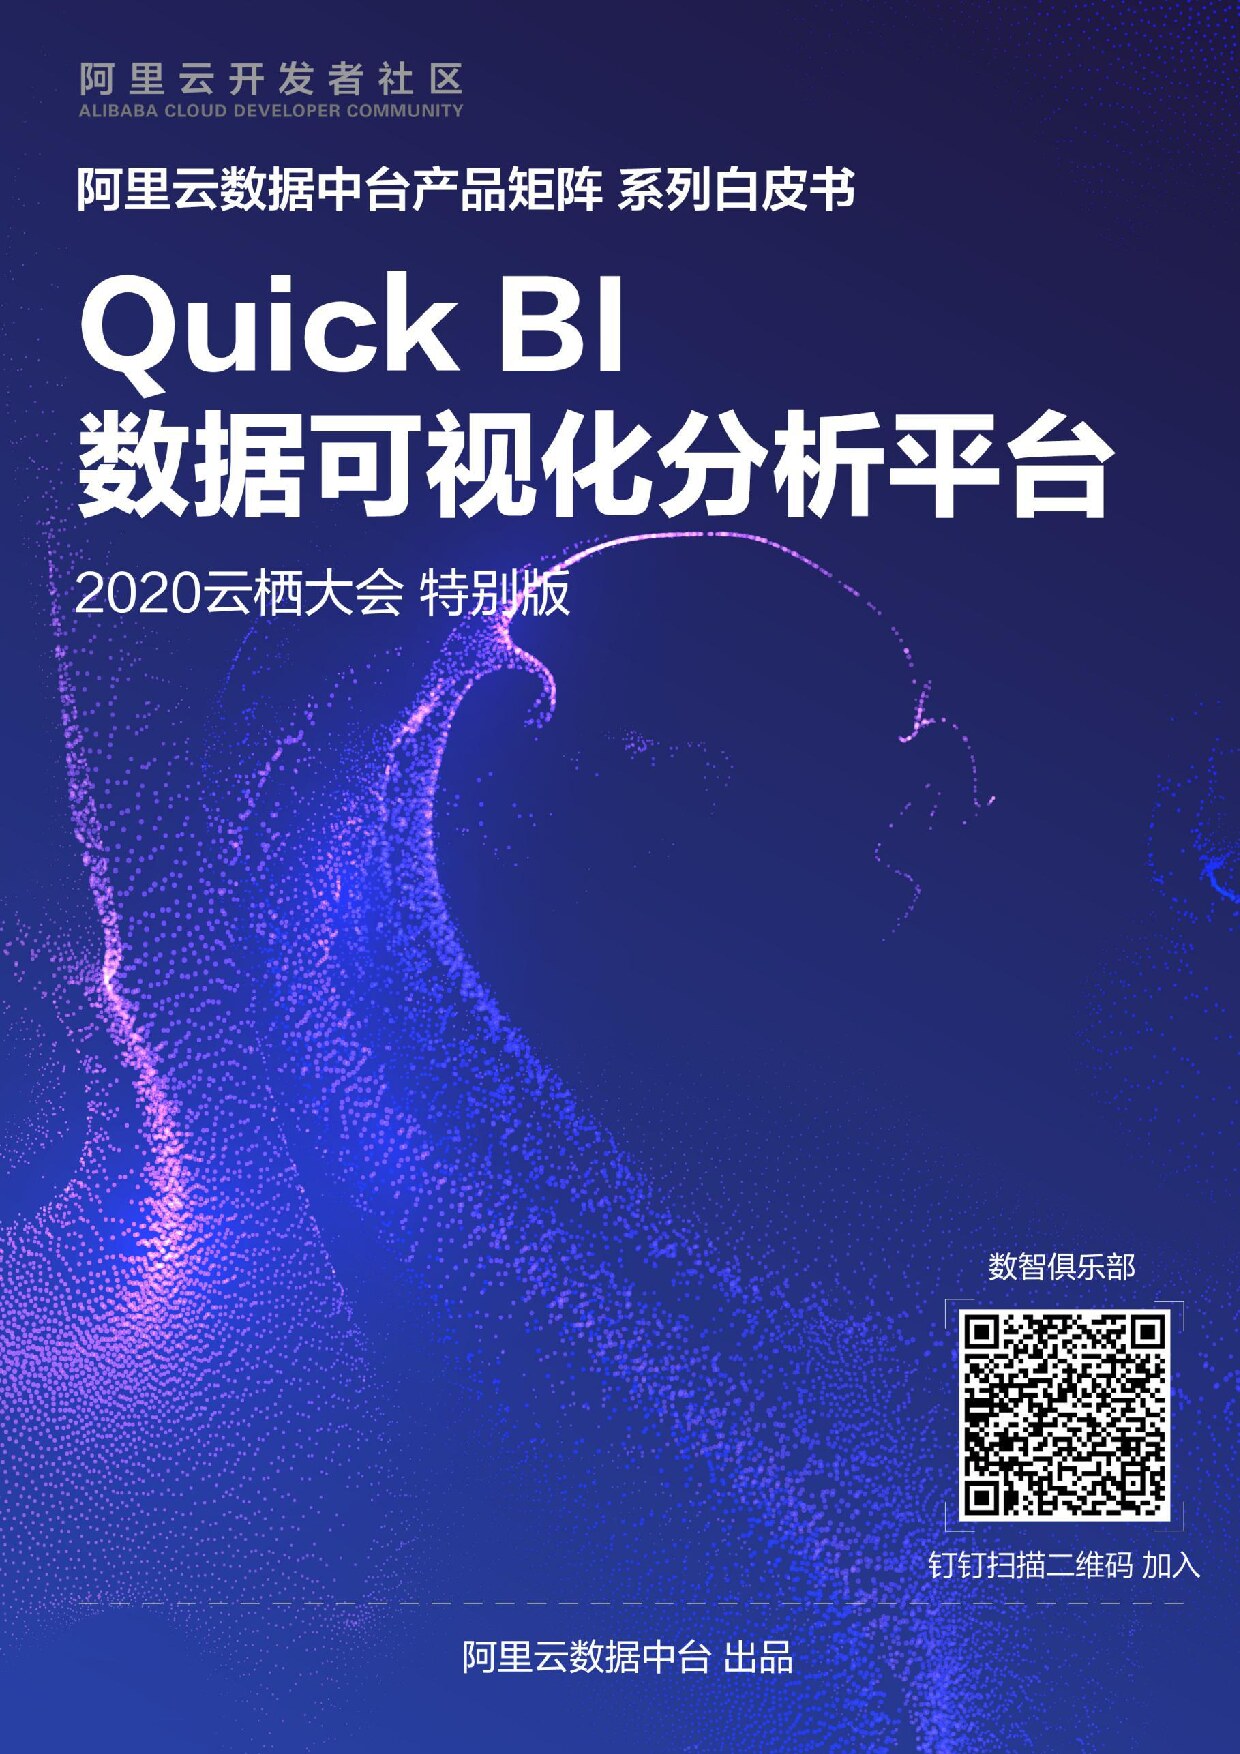 Quick+BI数据可视化分析平台——阿里云数据中台产品矩阵系列白皮书